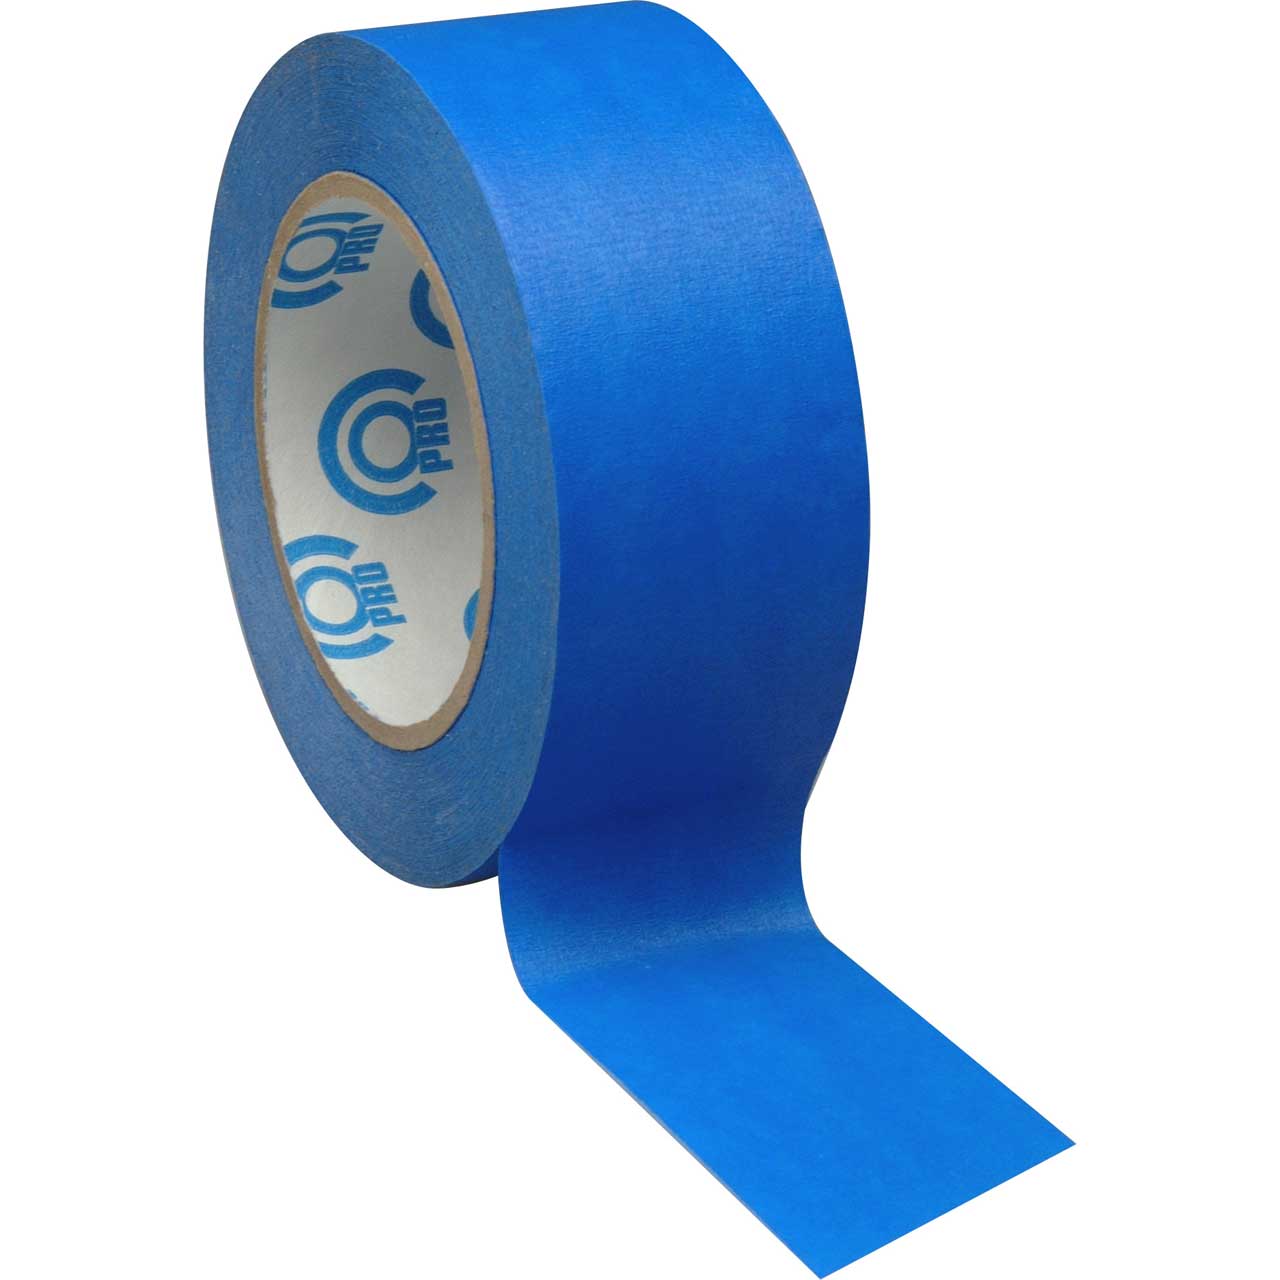 Pro Tape Artist Tape 1 in. x 60 yd Blue